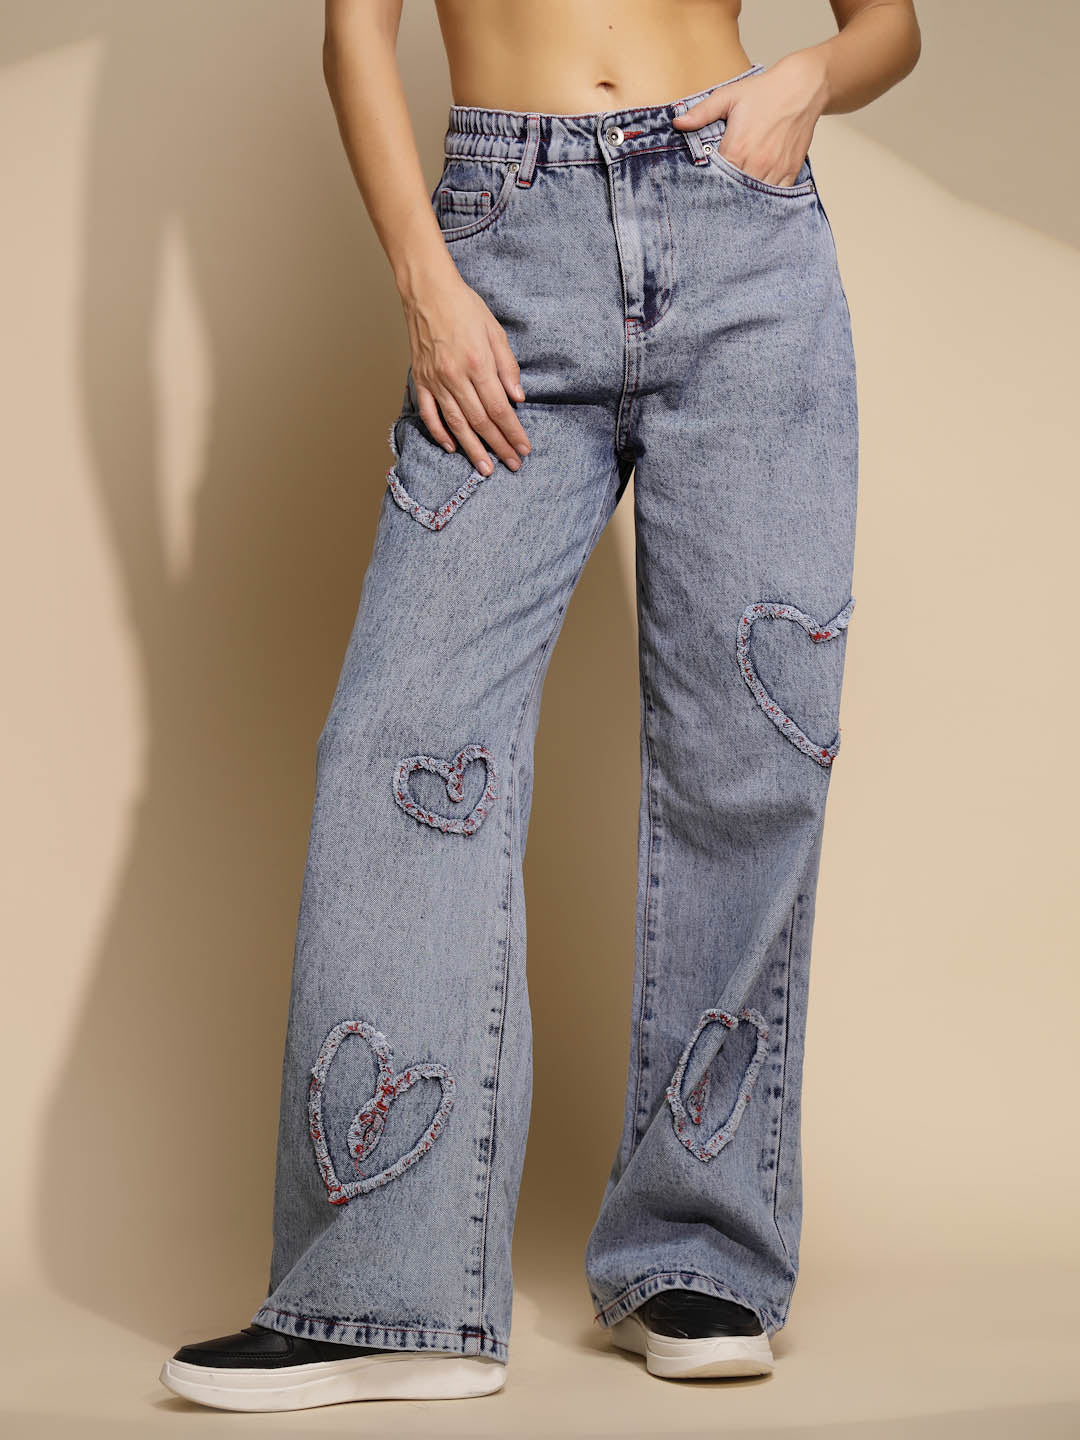 Women's Loose Fit Denim Mid Rise Blue Jeans